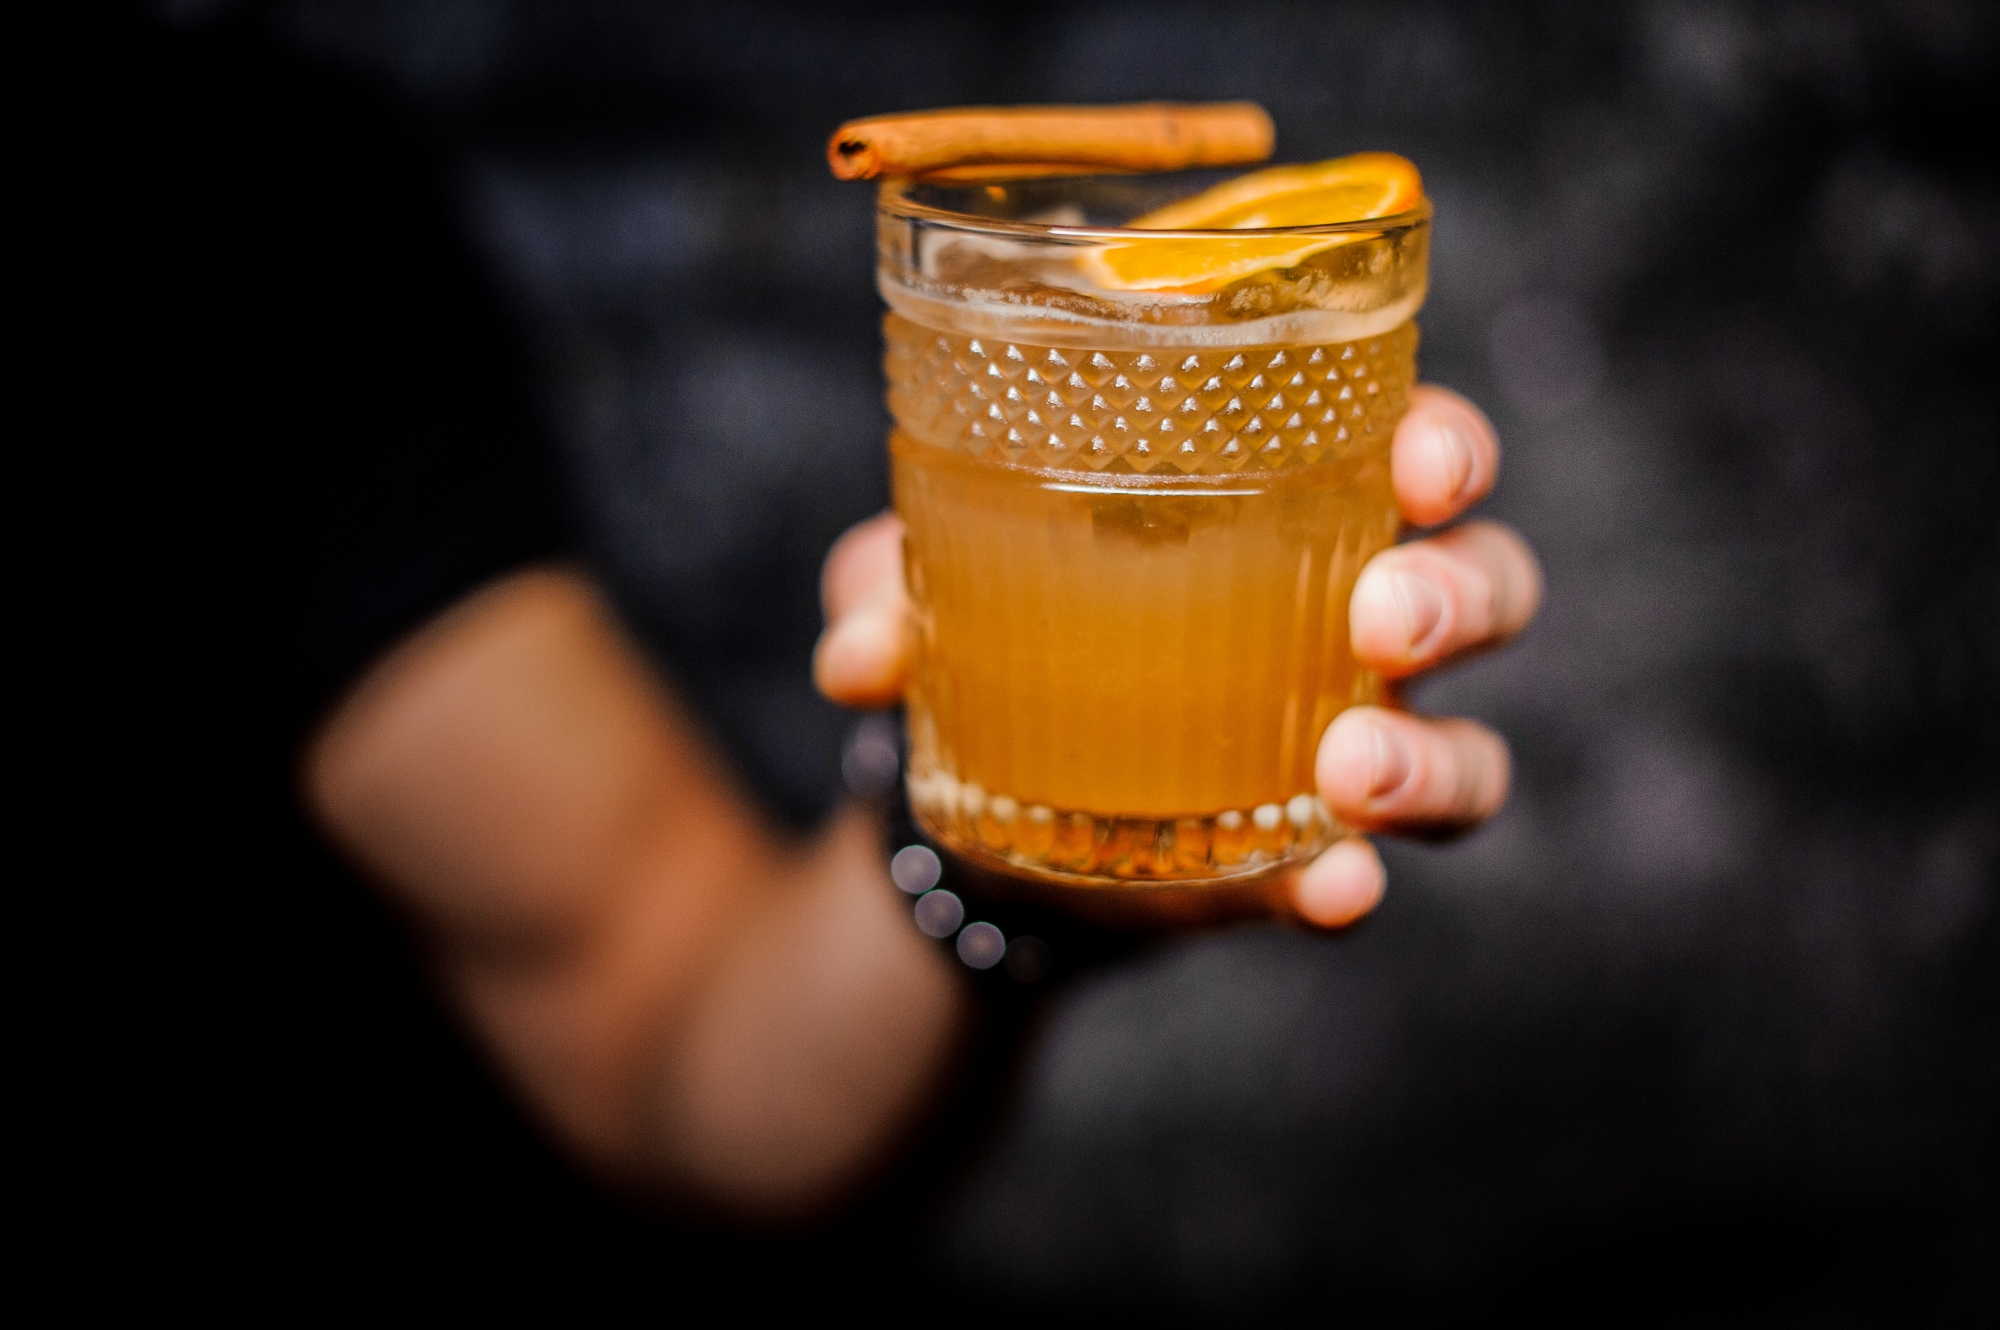 Recette Cocktail au pamplemousse et thé vert sans alcool (facile, rapide)